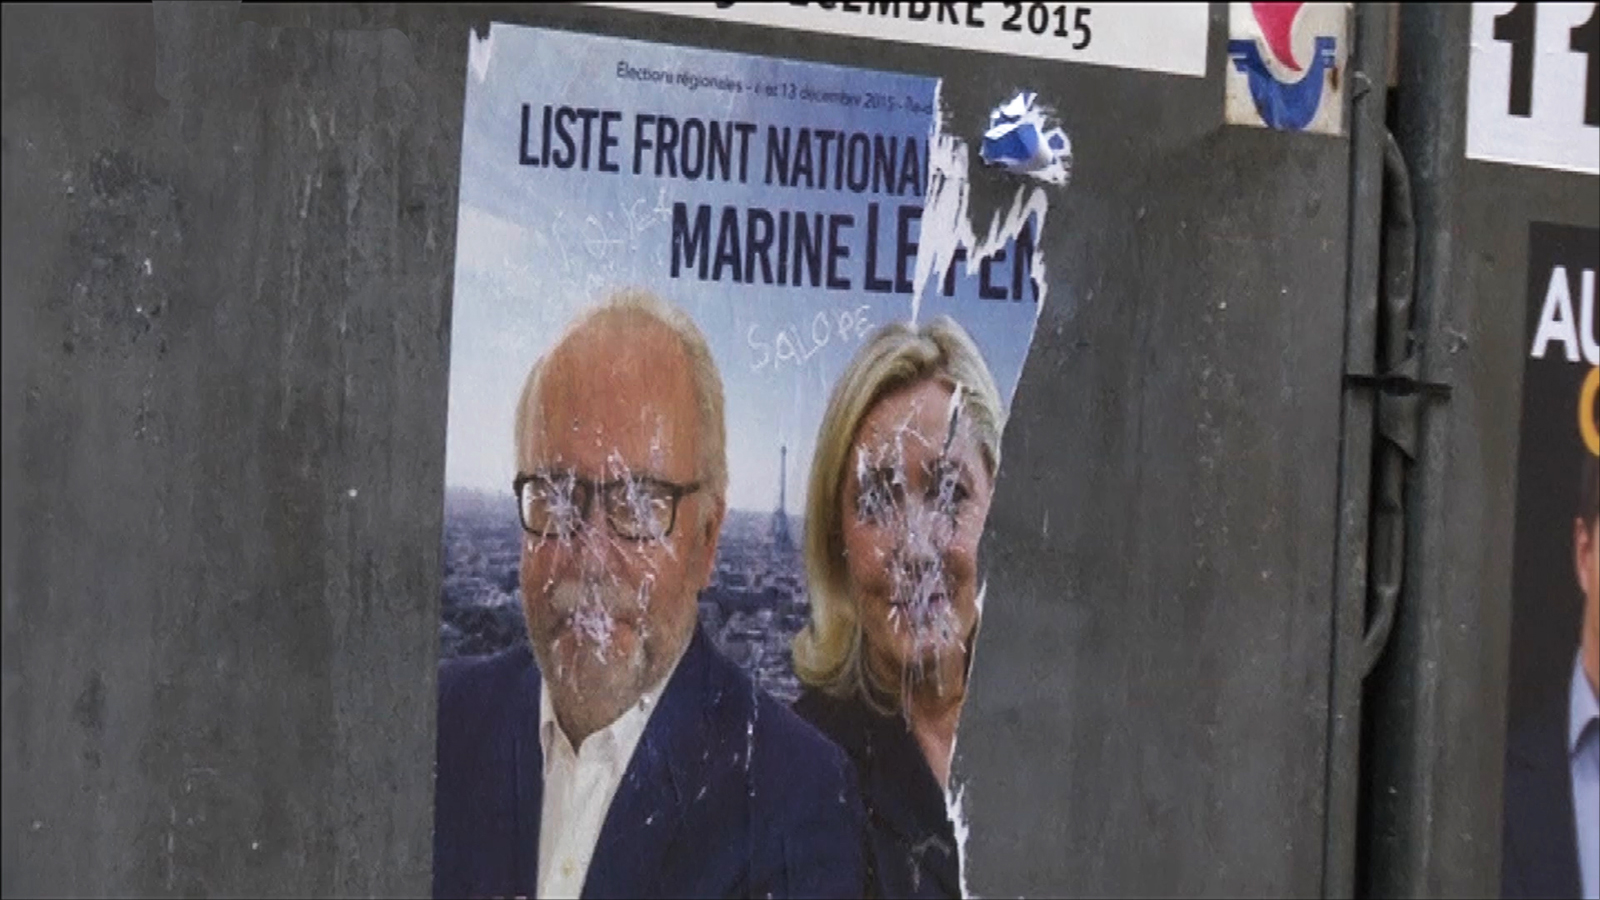 اليمين المتطرف الفرنسي ينتشر على "التواصل الاجتماعي"